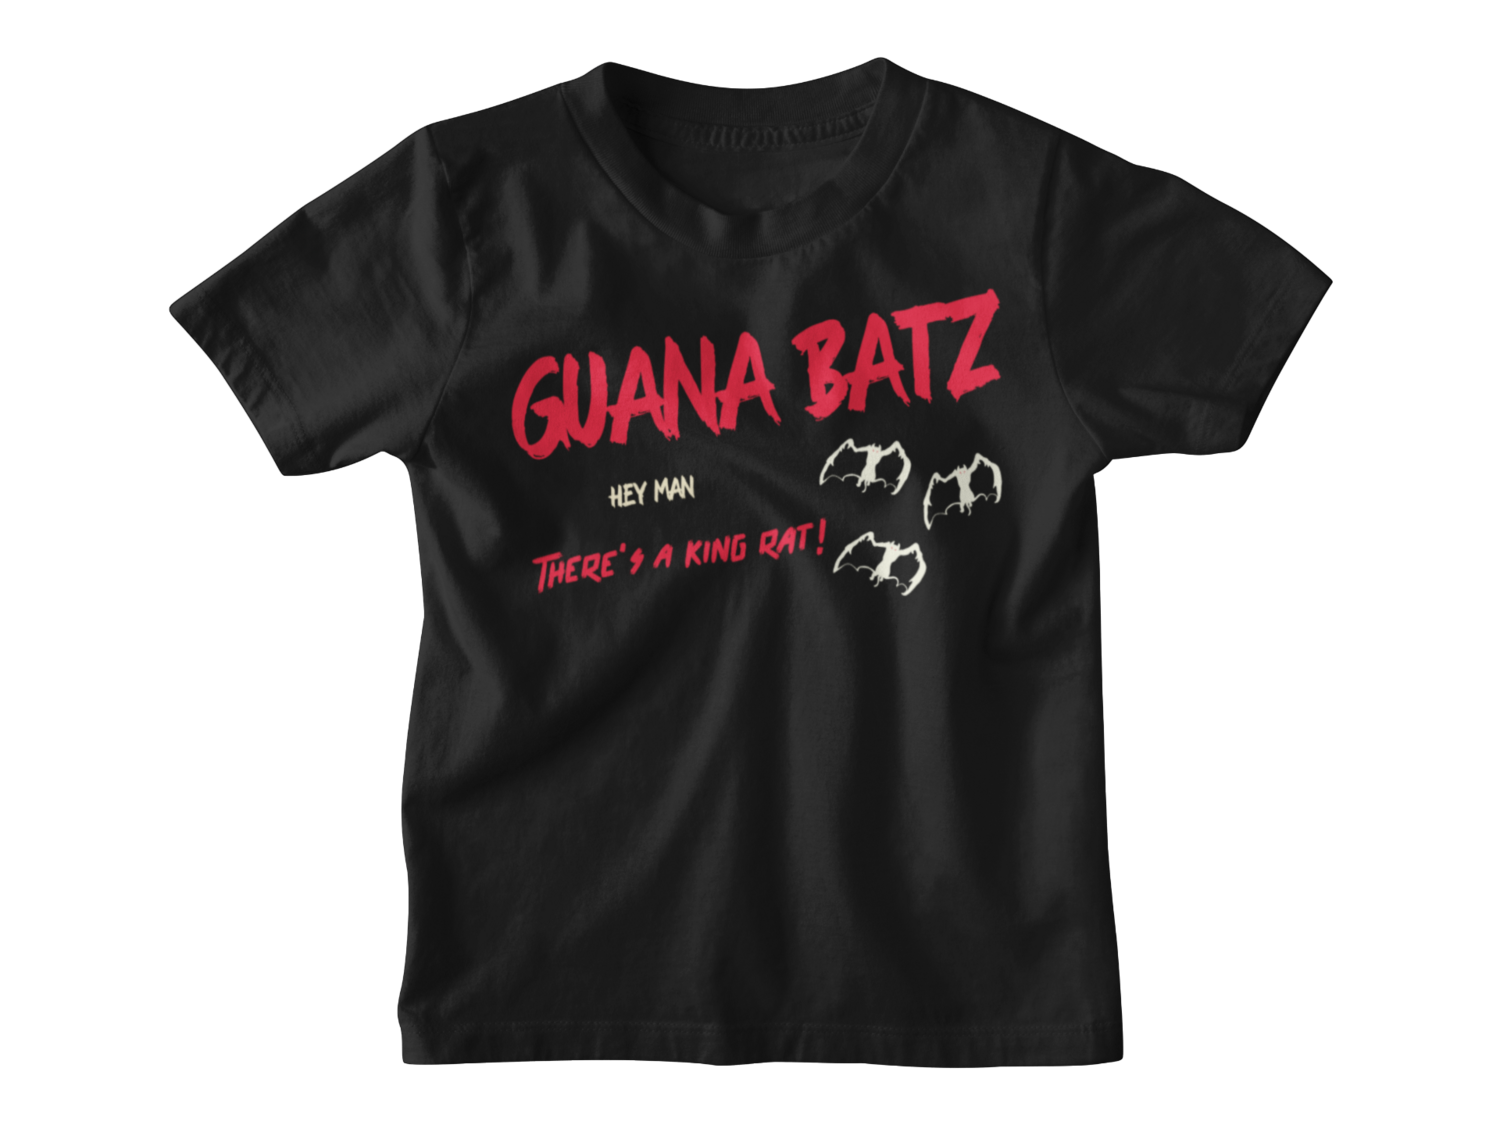 GUANA BATZ "King Rat" T-SHIRT KIDS